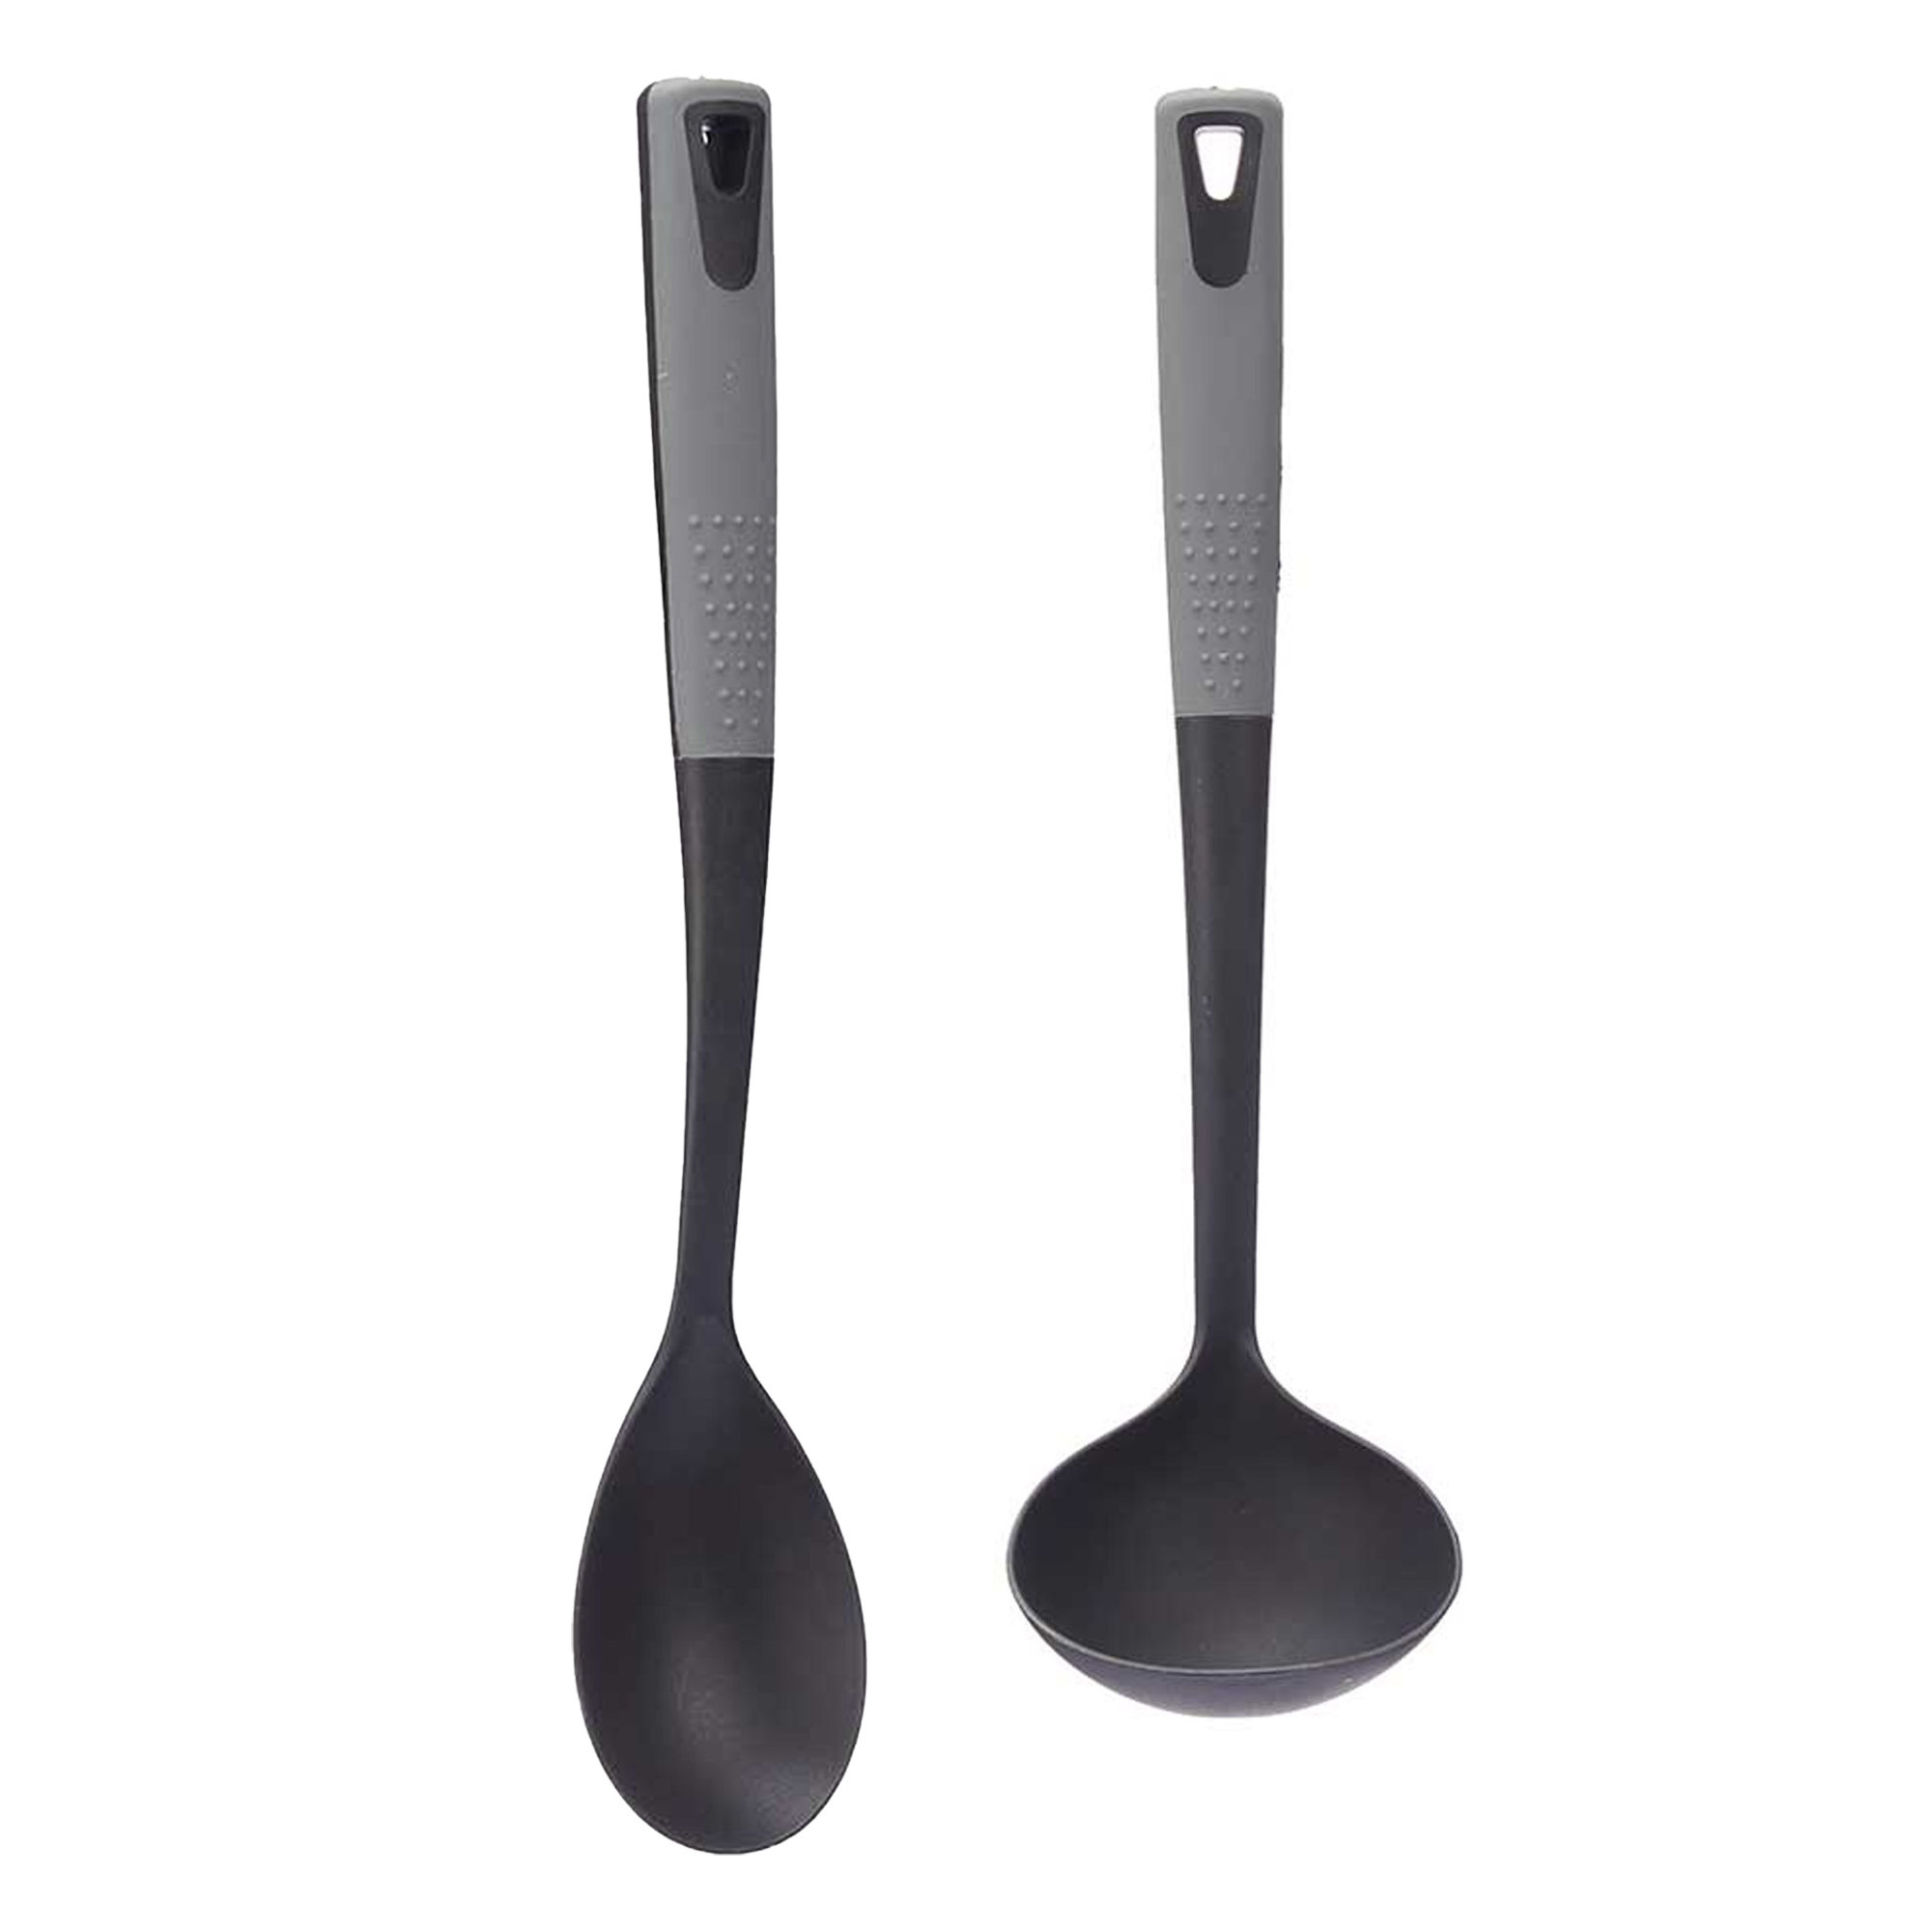 Kook-keuken gerei set van 2x stuks zwart-grijs kunststof keuken-kook accessoires